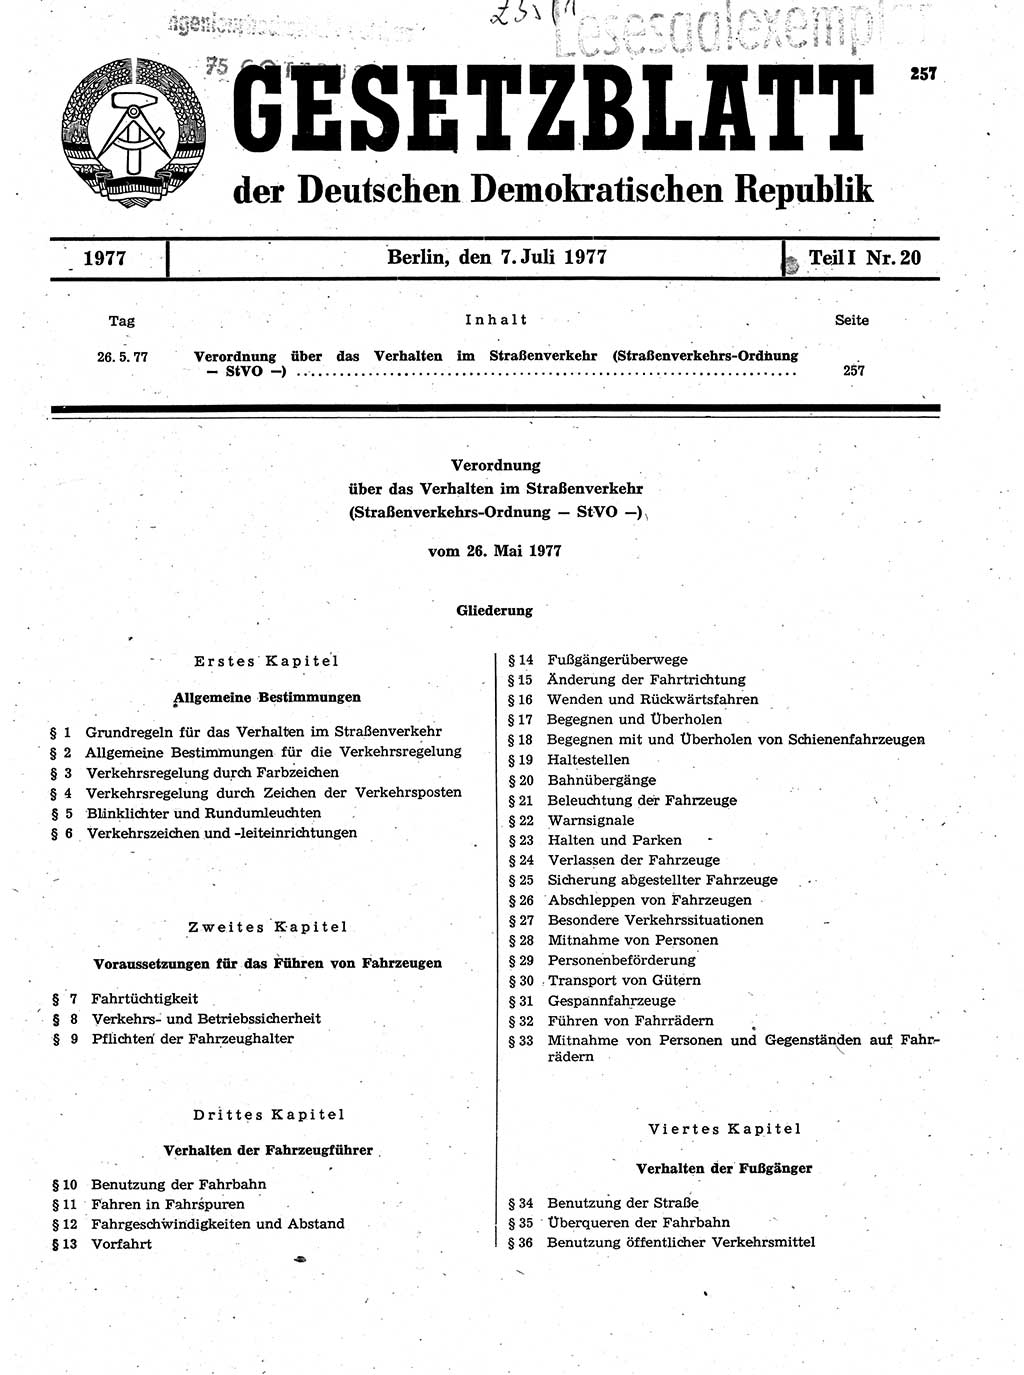 Gesetzblatt (GBl.) der Deutschen Demokratischen Republik (DDR) Teil Ⅰ 1977, Seite 257 (GBl. DDR Ⅰ 1977, S. 257)